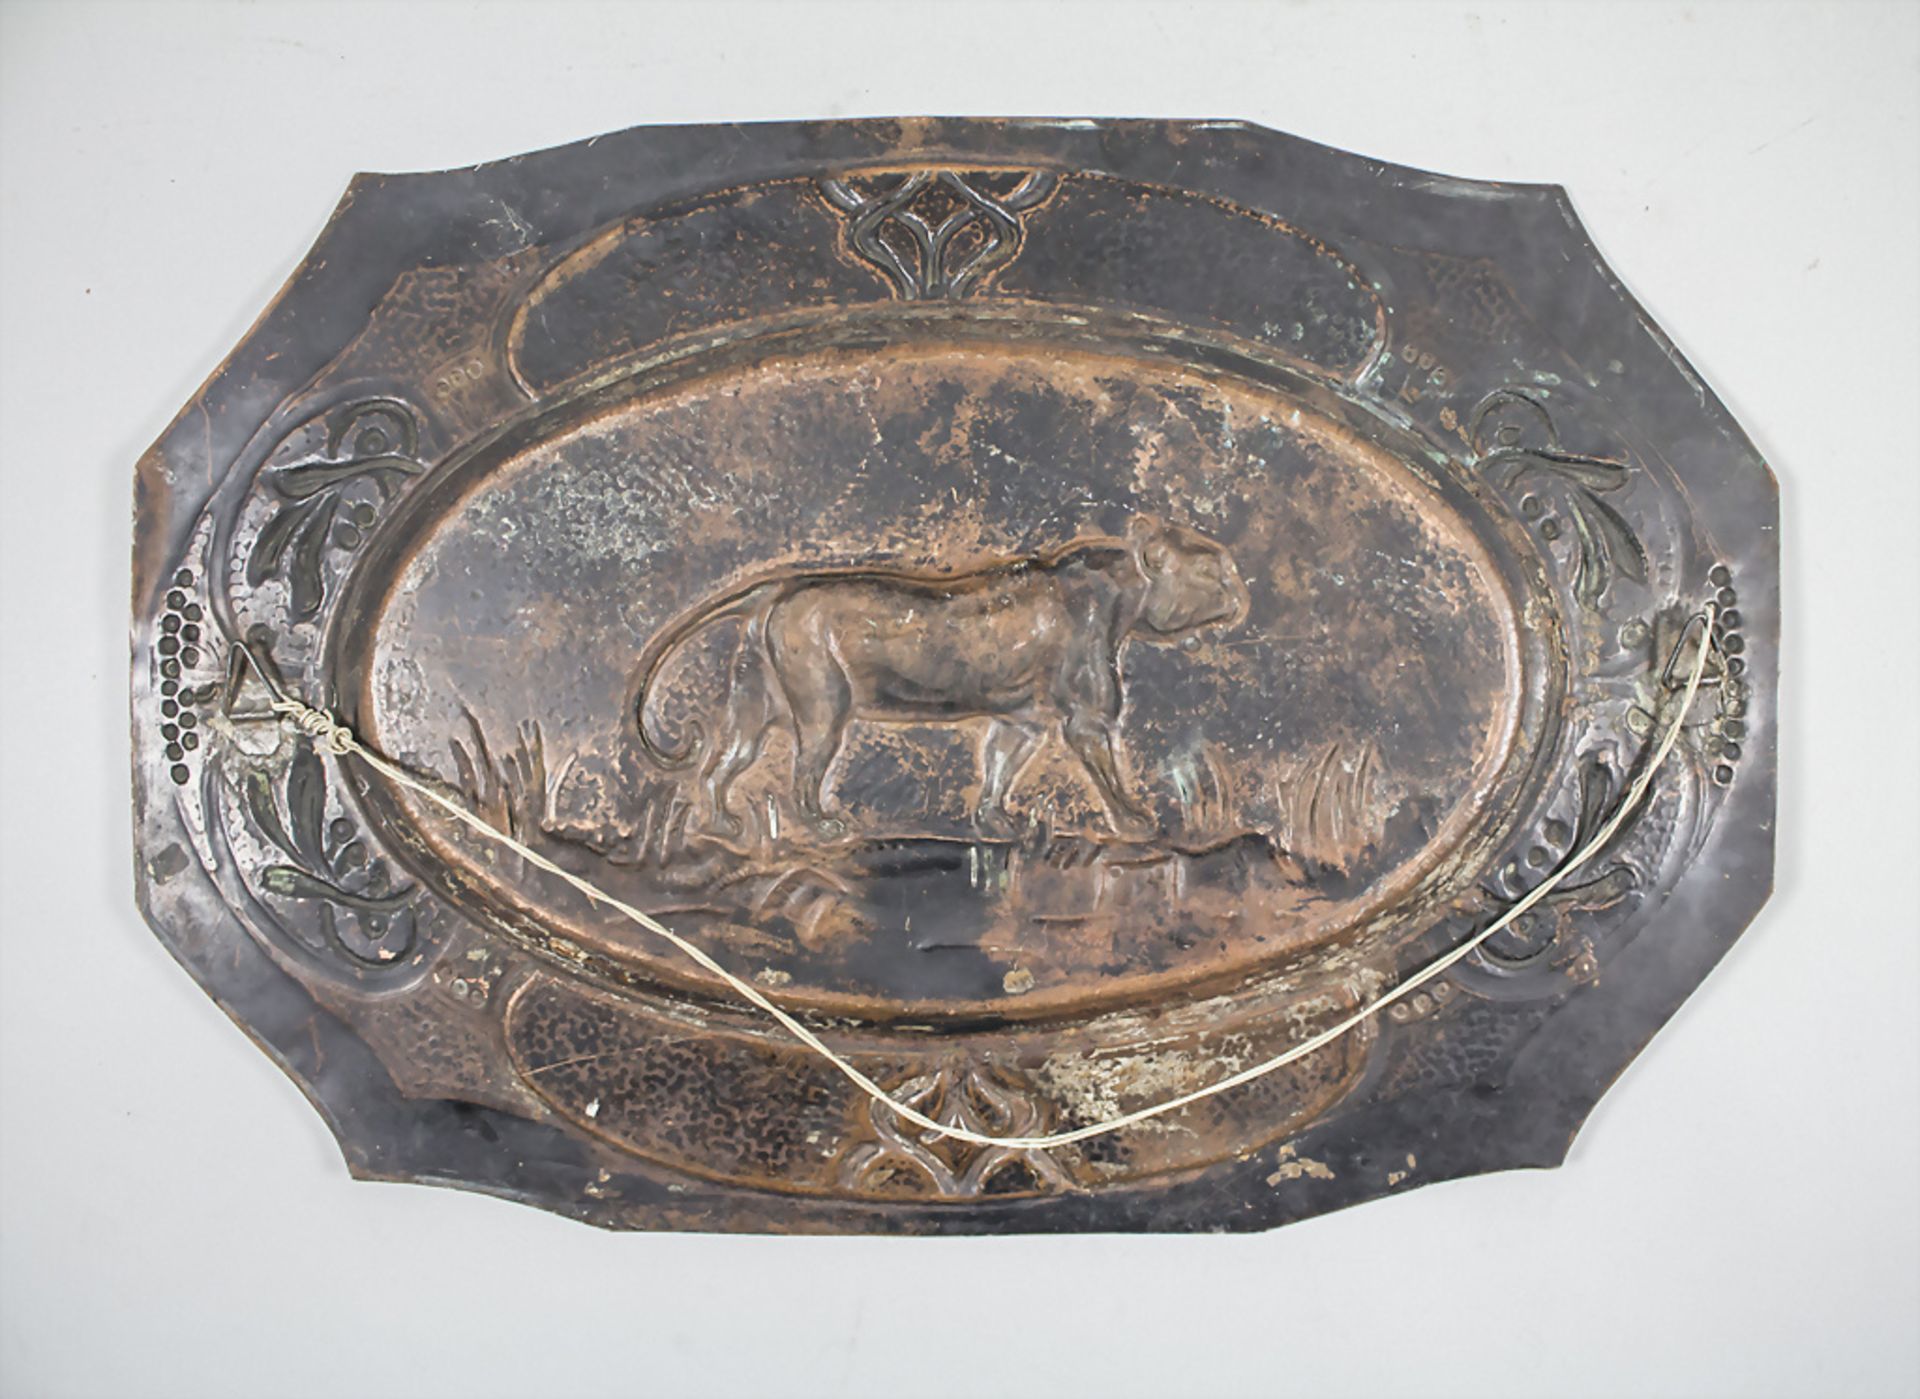 Kupfer-Wandplatte 'Panther' / A copper wall plate 'Panther' - Bild 3 aus 3